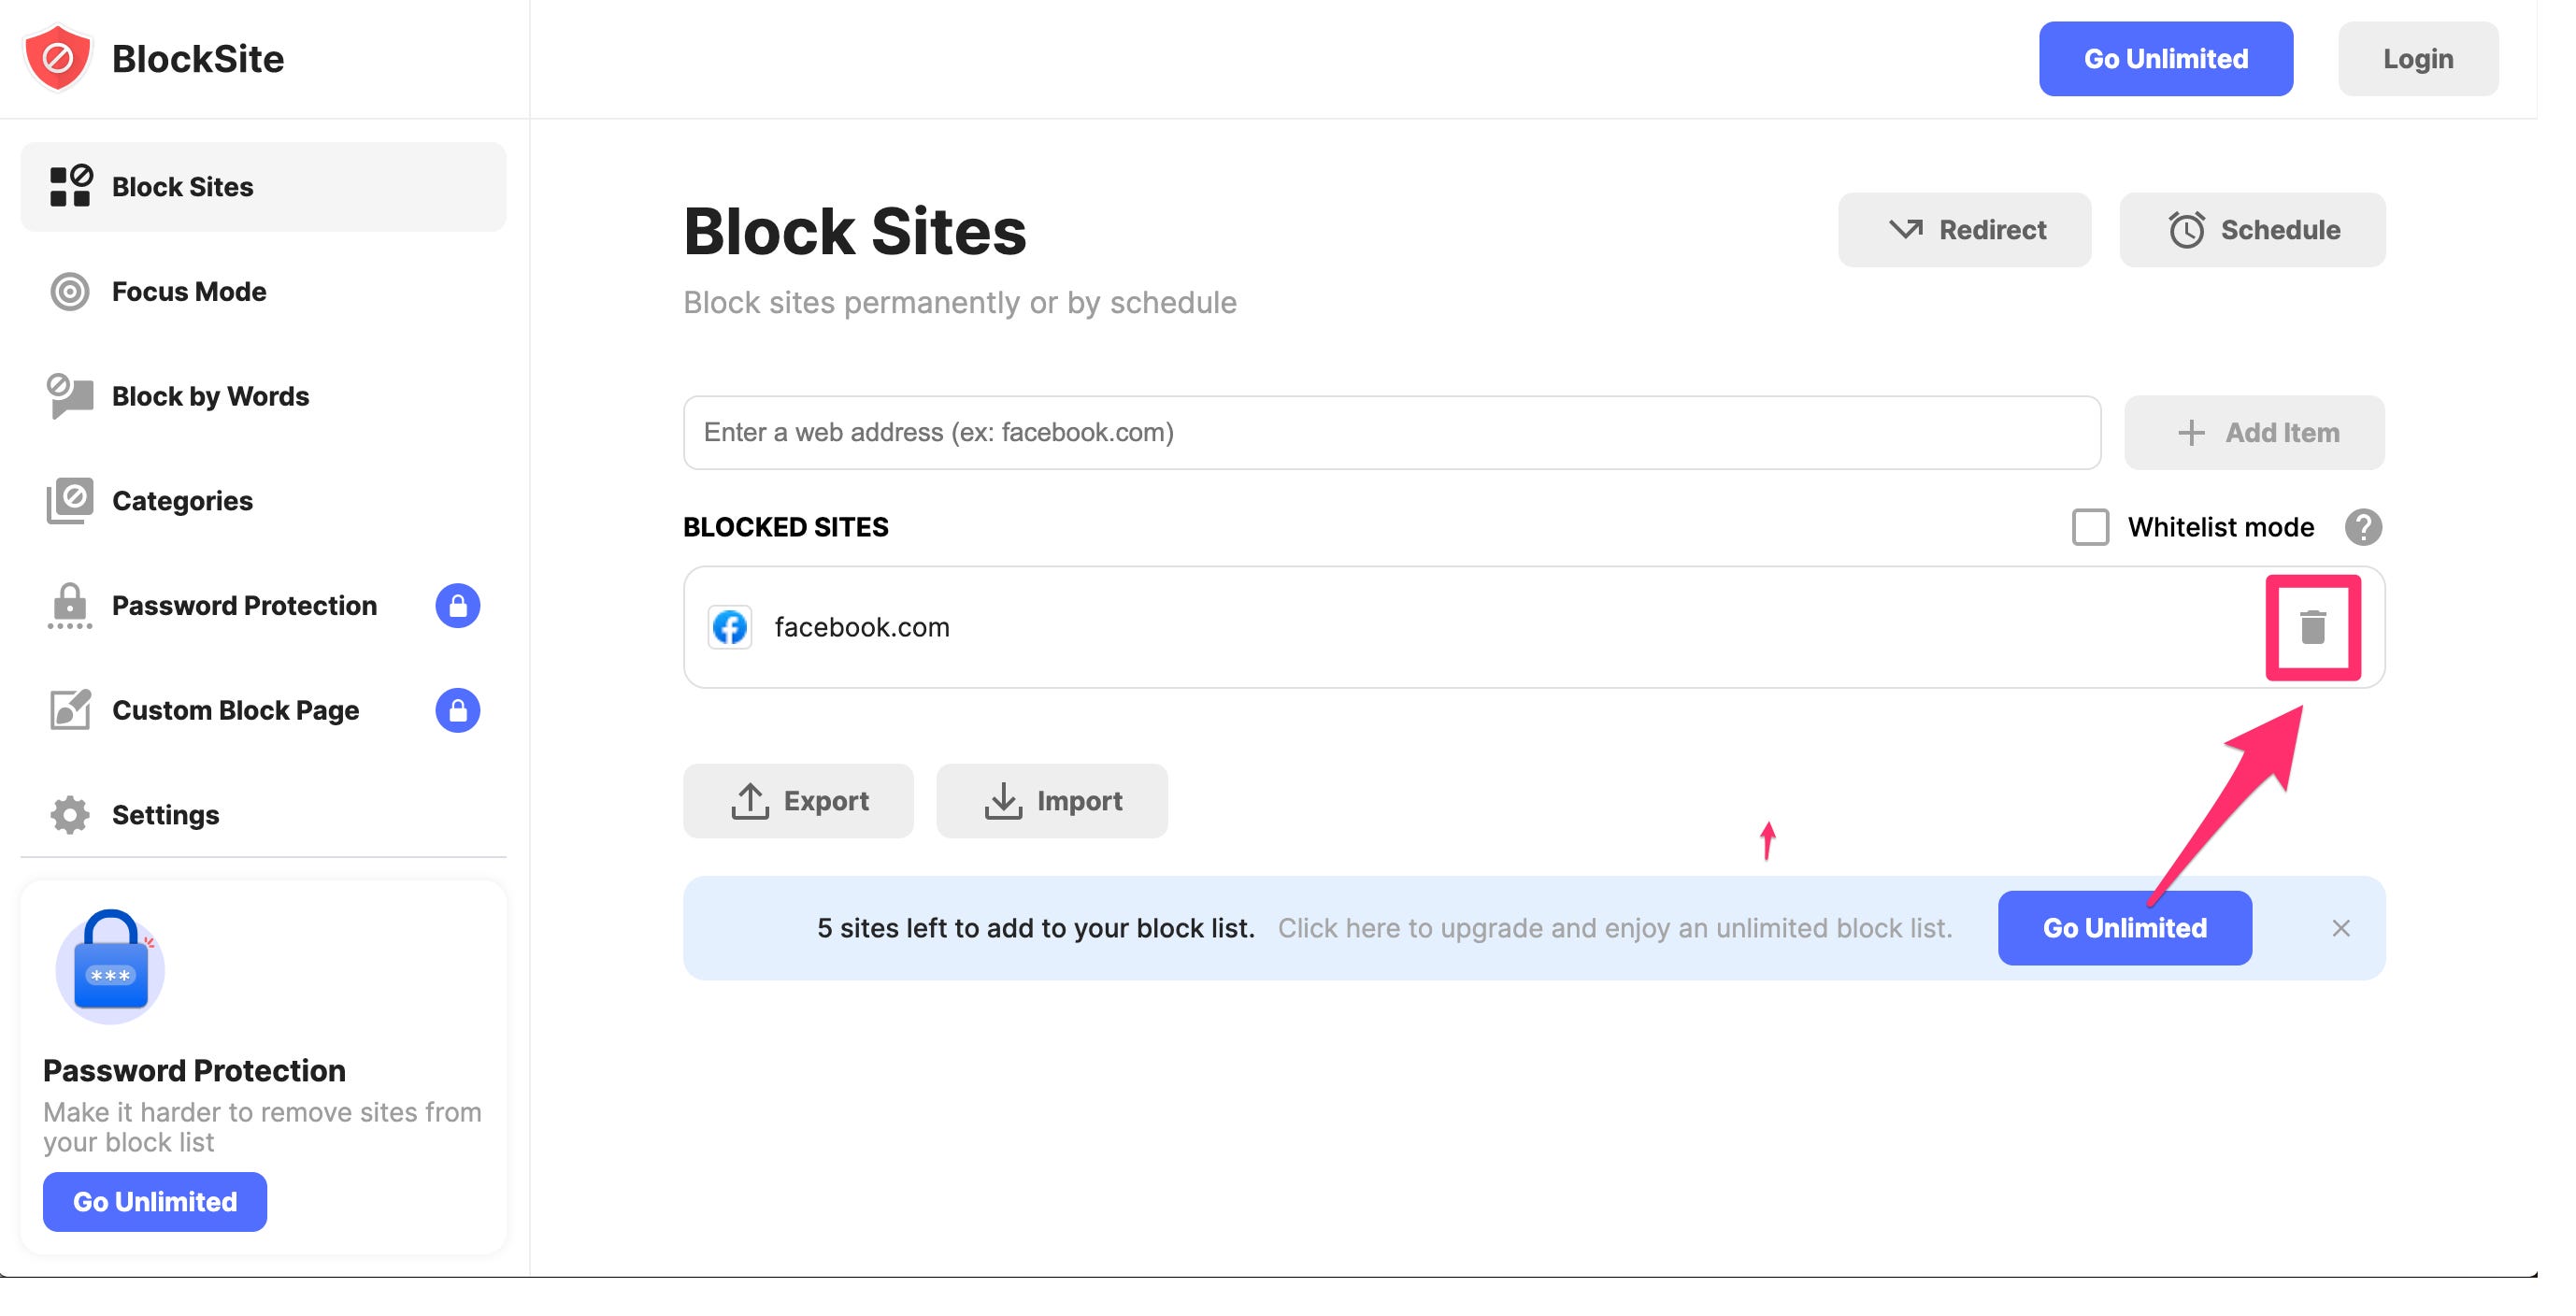 Pagina delle impostazioni di BlockSite con l'icona del cestino evidenziata.